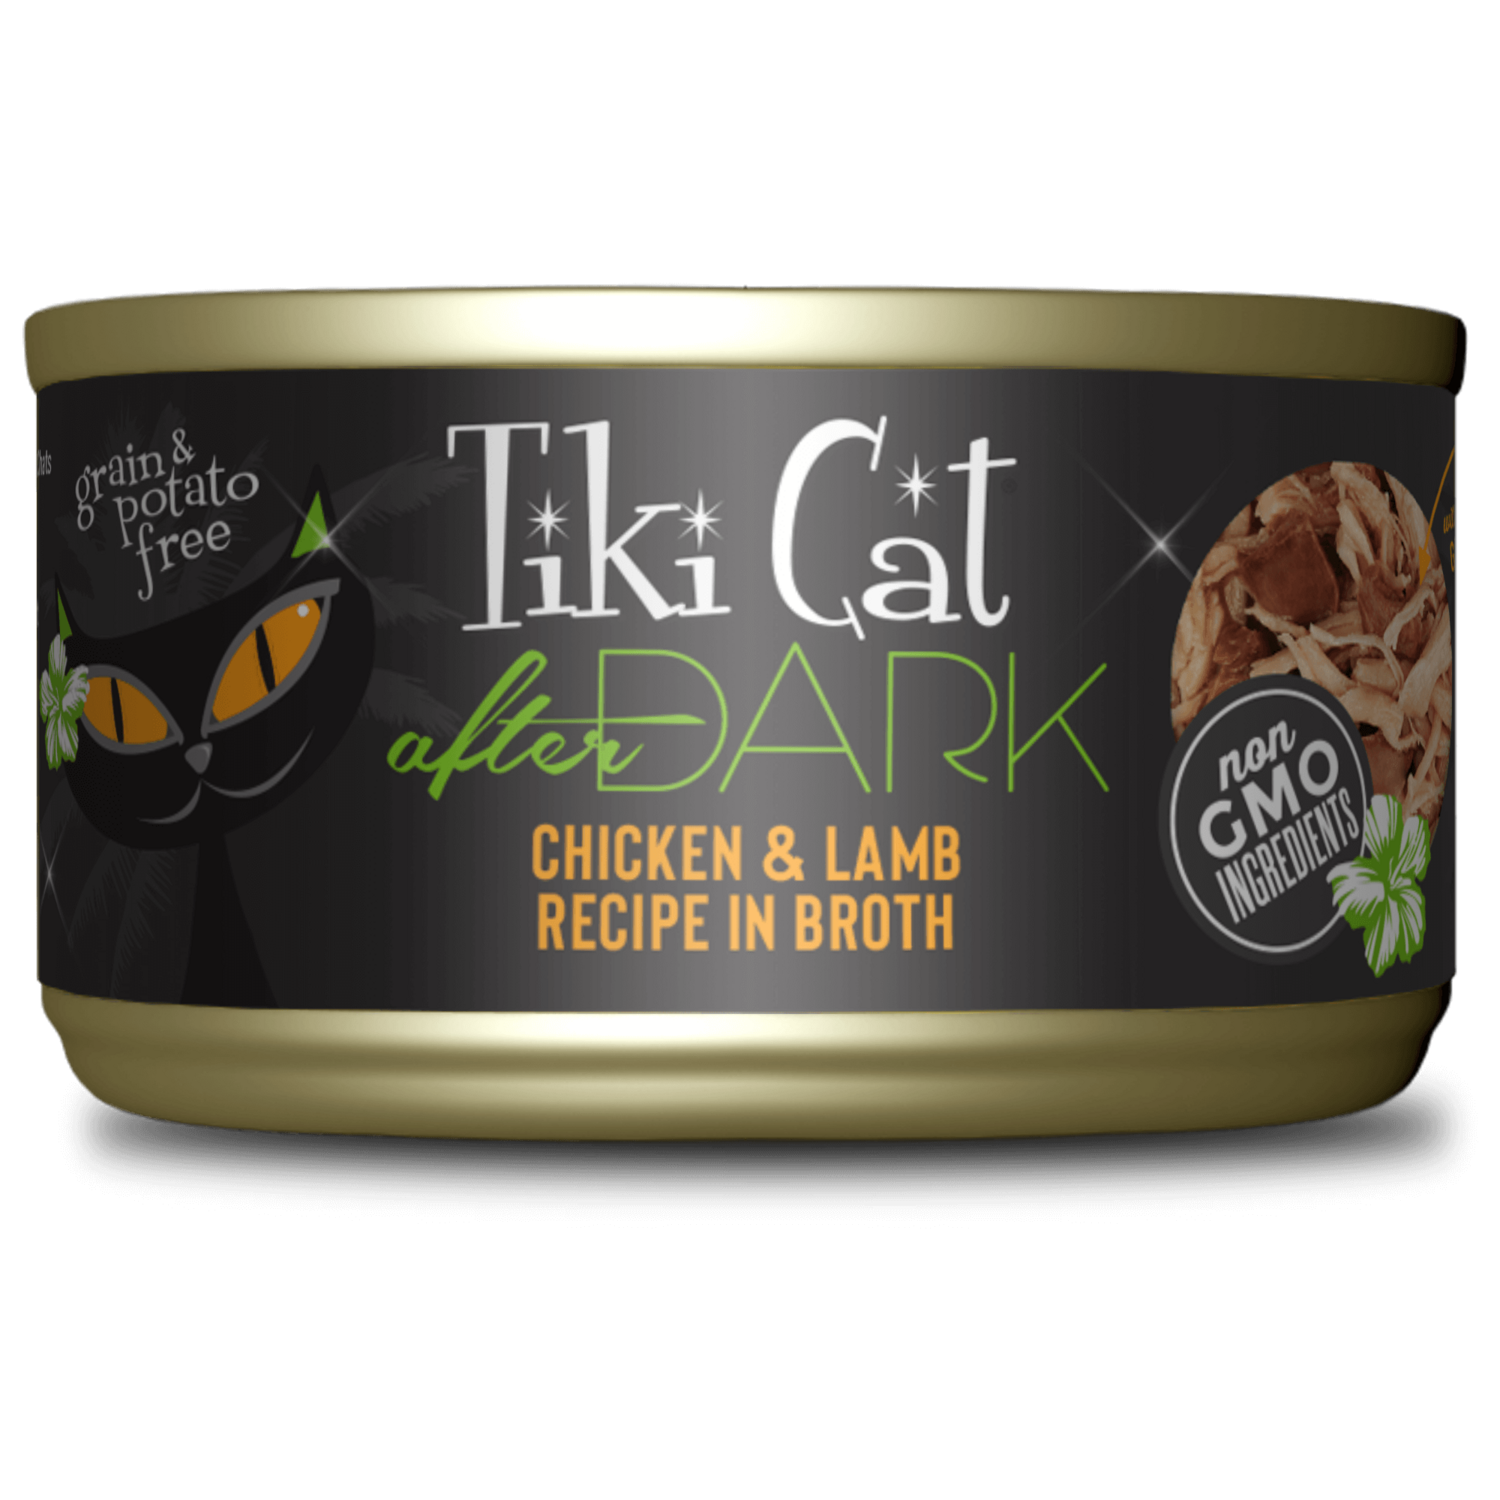 TikiCat After Dark Chicken & Lamb Recipe in Broth